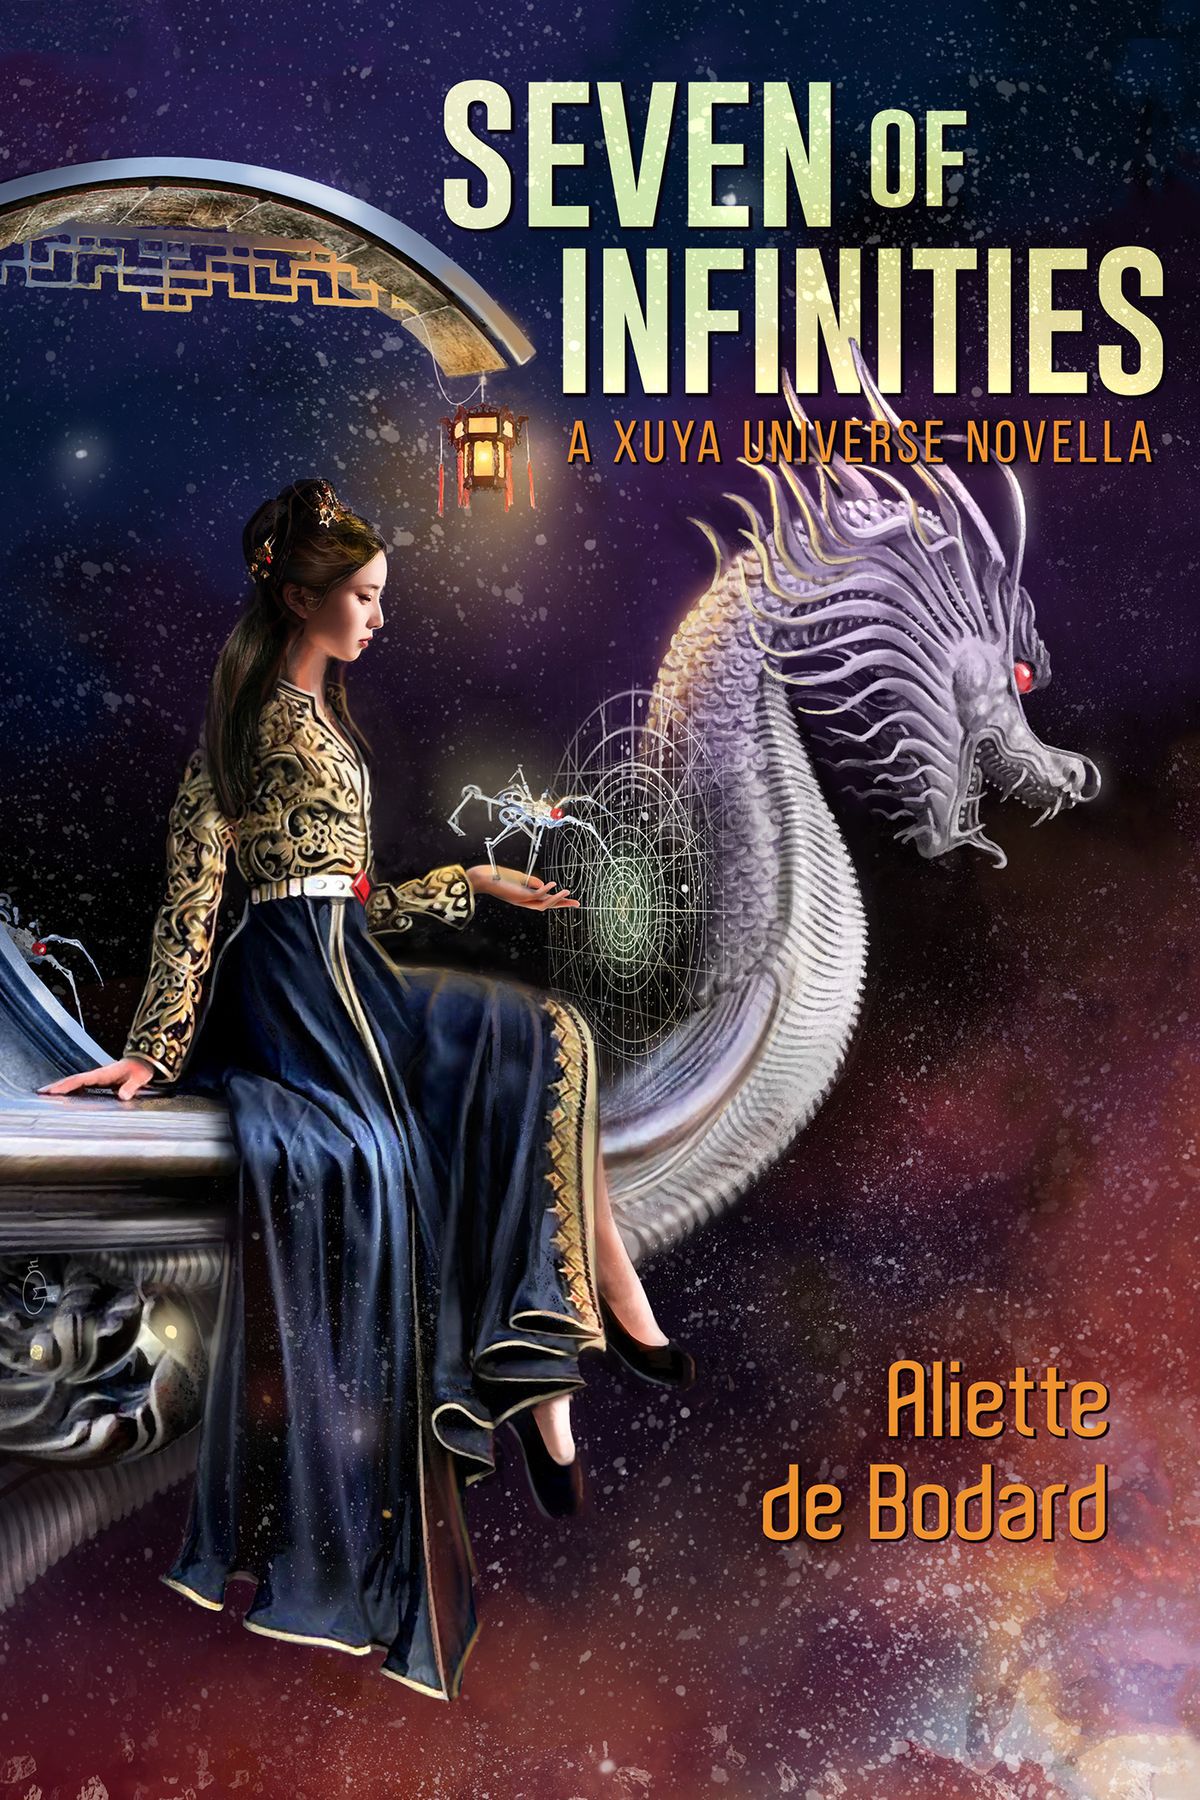 The cover of Seven of Infinities by Aliette de Bodard